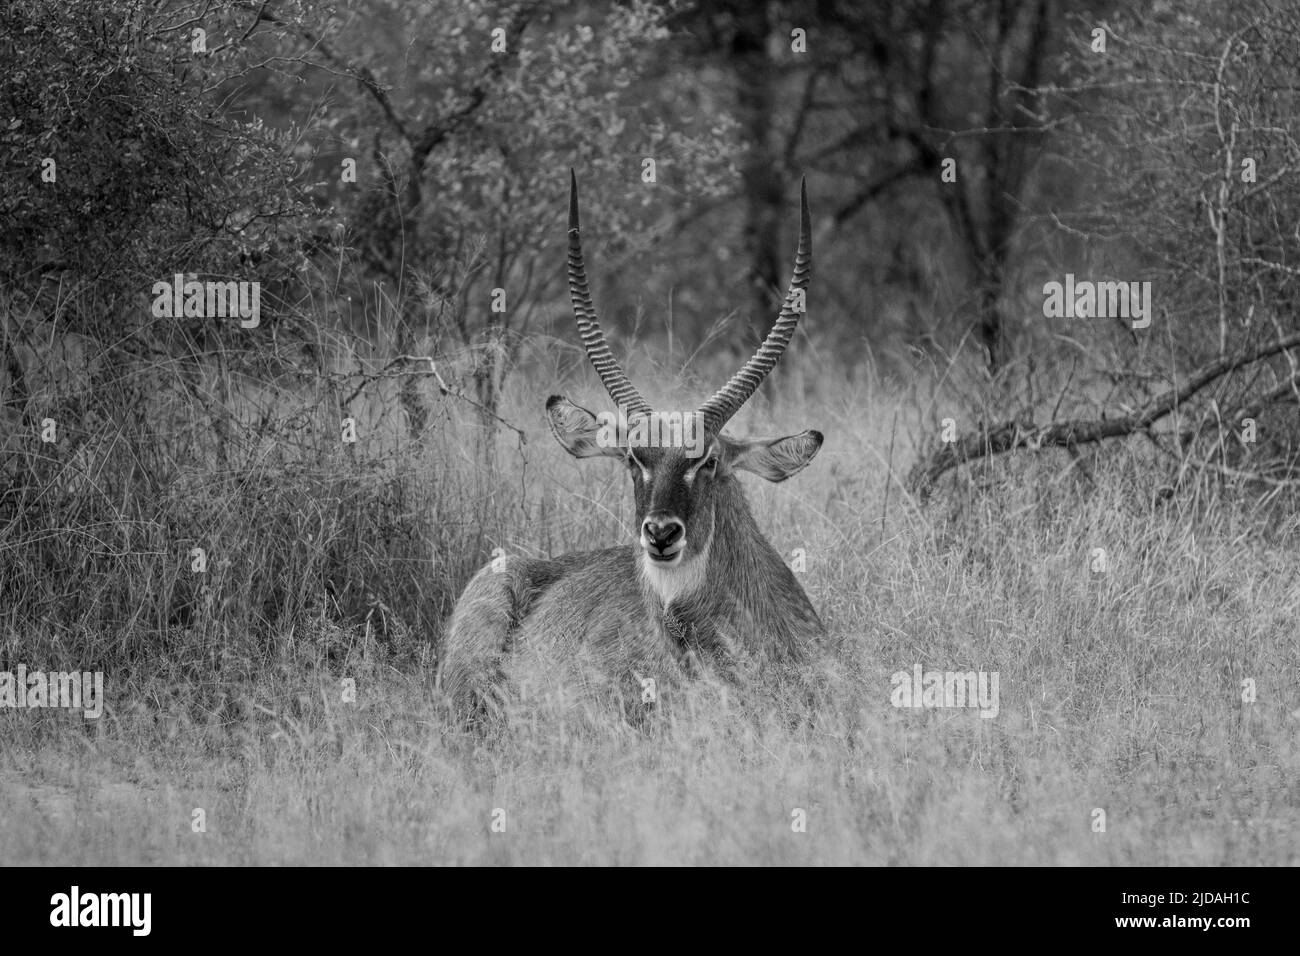 Un Waterbuck, Kobus ellipsiprymnus, se trouve dans une grande herbe, un regard direct, en noir et blanc Banque D'Images